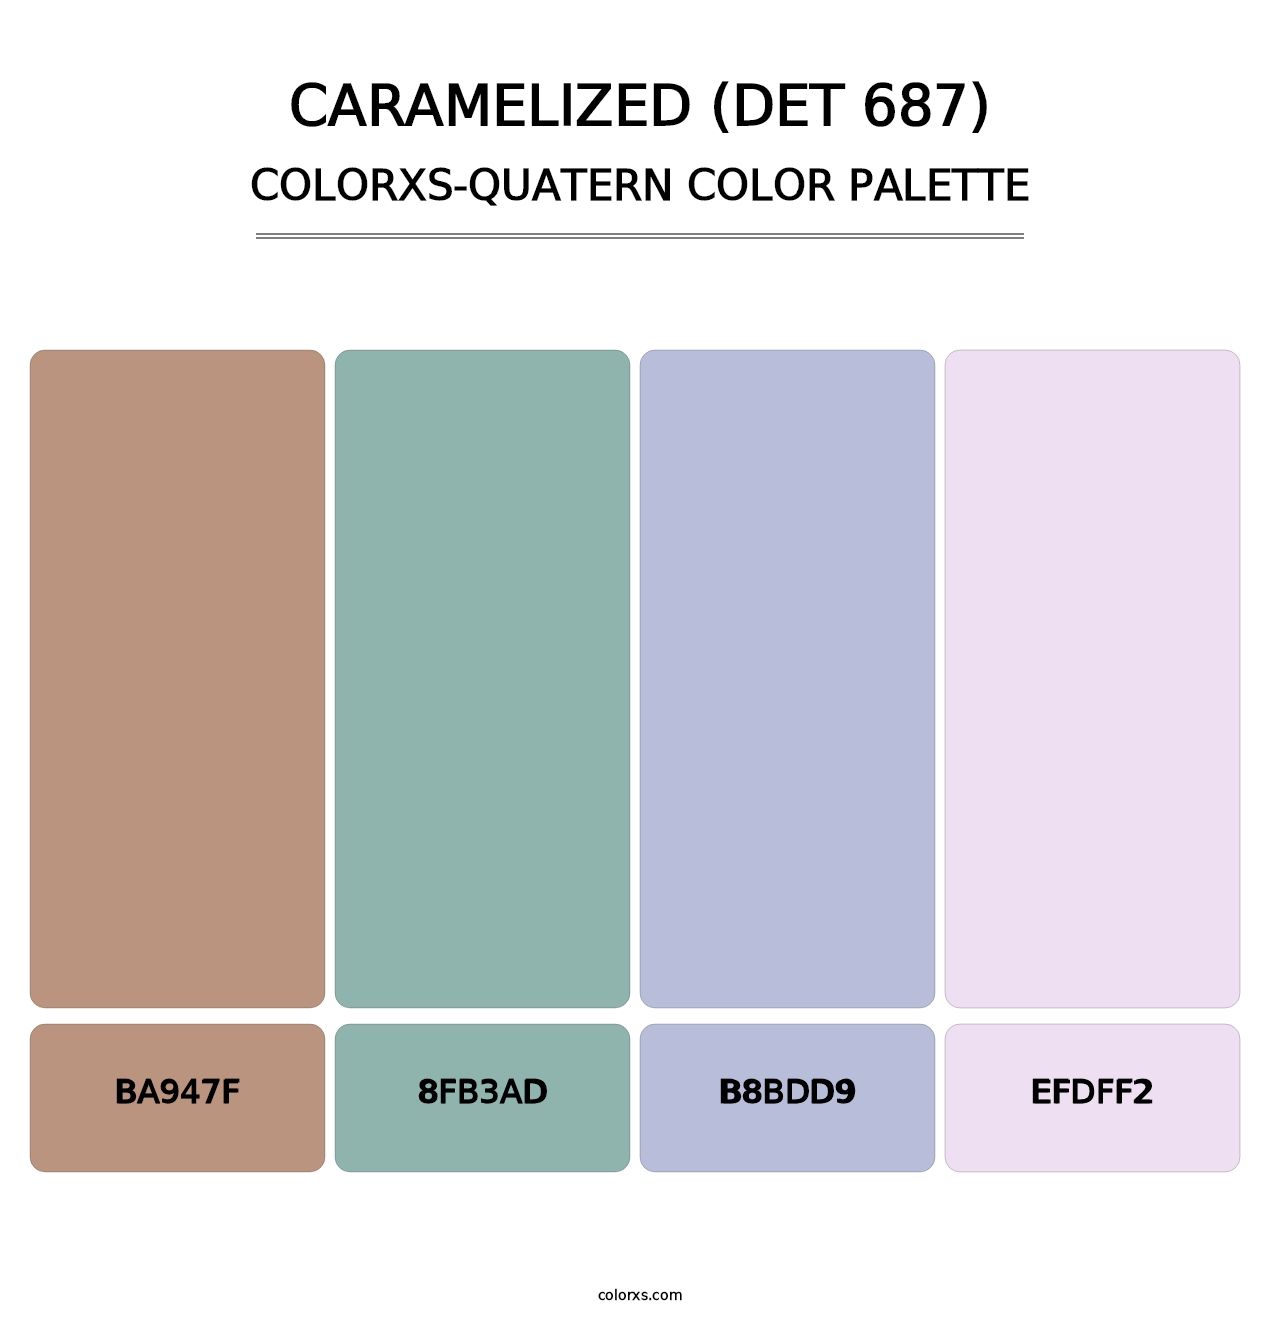 Caramelized (DET 687) - Colorxs Quatern Palette